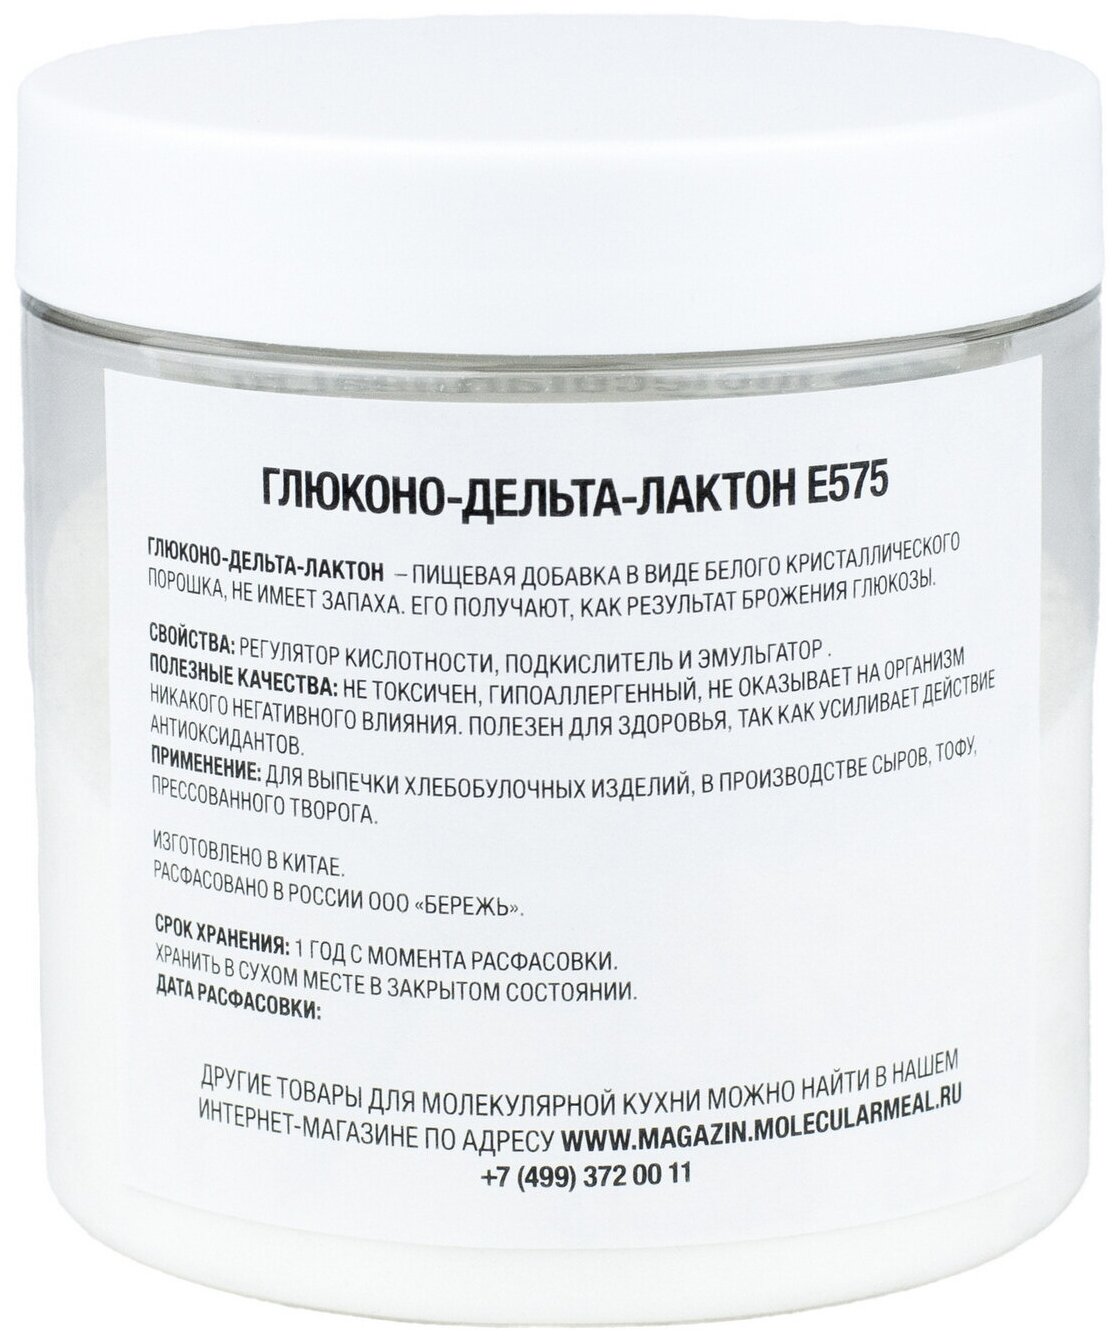 Глюконо-дельта-лактон (е575): вред и польза